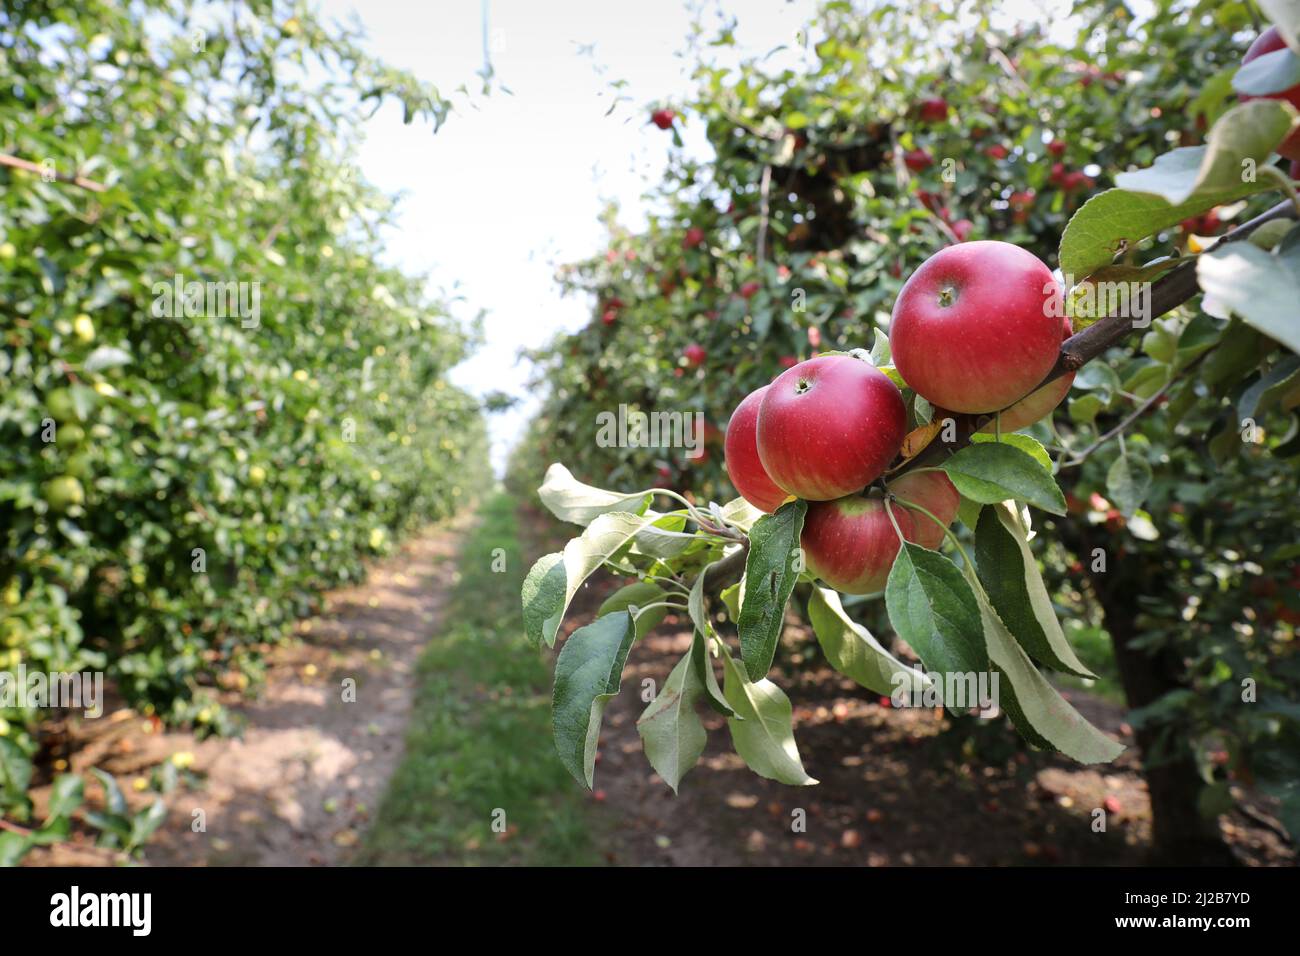 Verger de pomme : culture de pommes dessert, pomme rouge sur un pommier avant récolte Banque D'Images